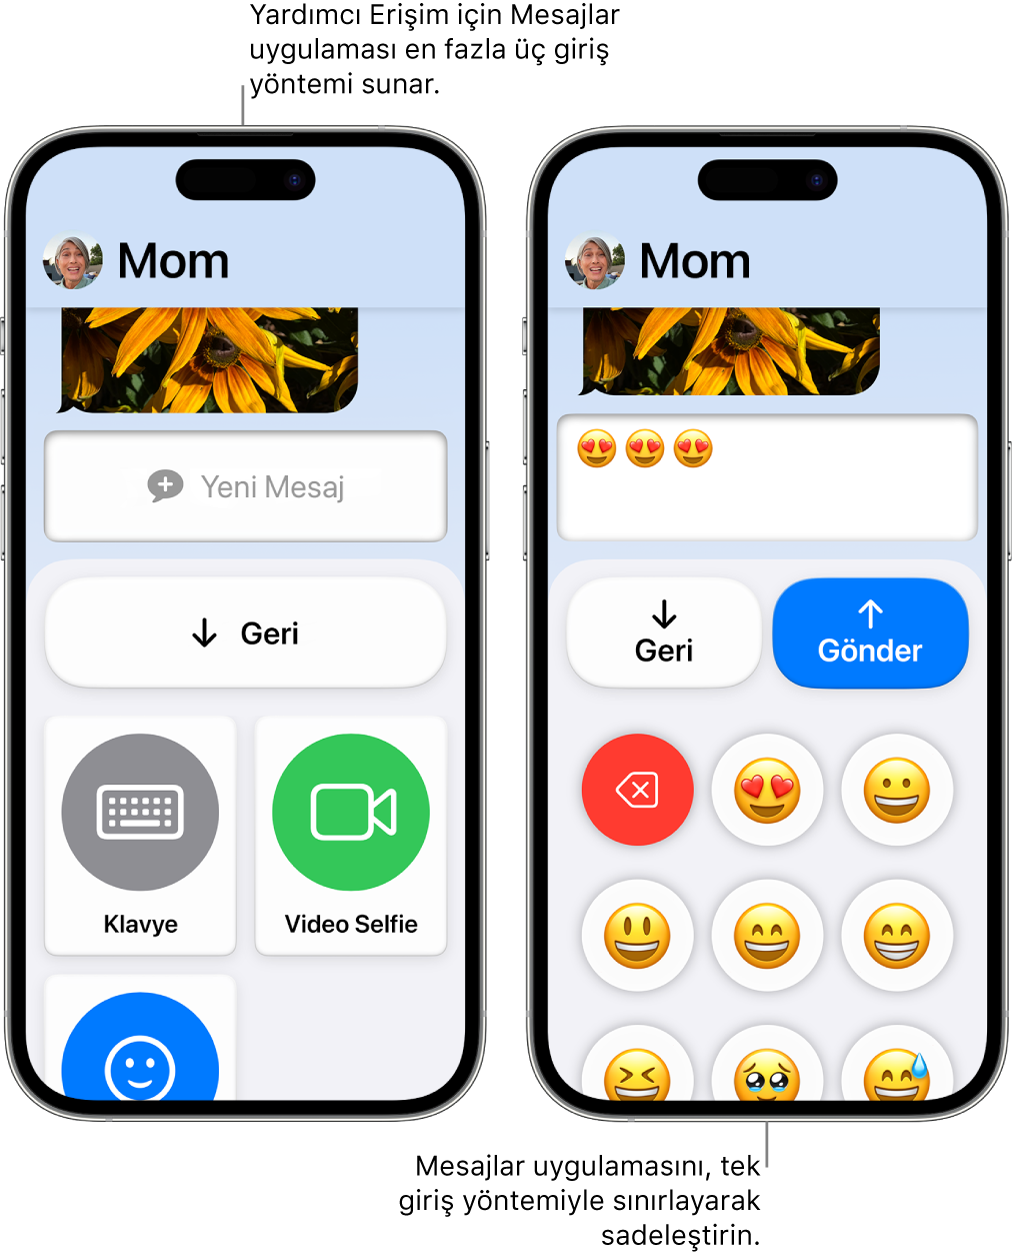 Yardımcı Erişim modunda iki iPhone. Bir iPhone, kullanıcının aralarından seçim yapabileceği Klavye veya Video Selfie gibi giriş yöntemleriyle Mesajlar uygulamasını gösteriyor. Diğeri, yalnızca emojilerden oluşan bir klavye kullanılarak gönderilen bir mesajı gösteriyor.